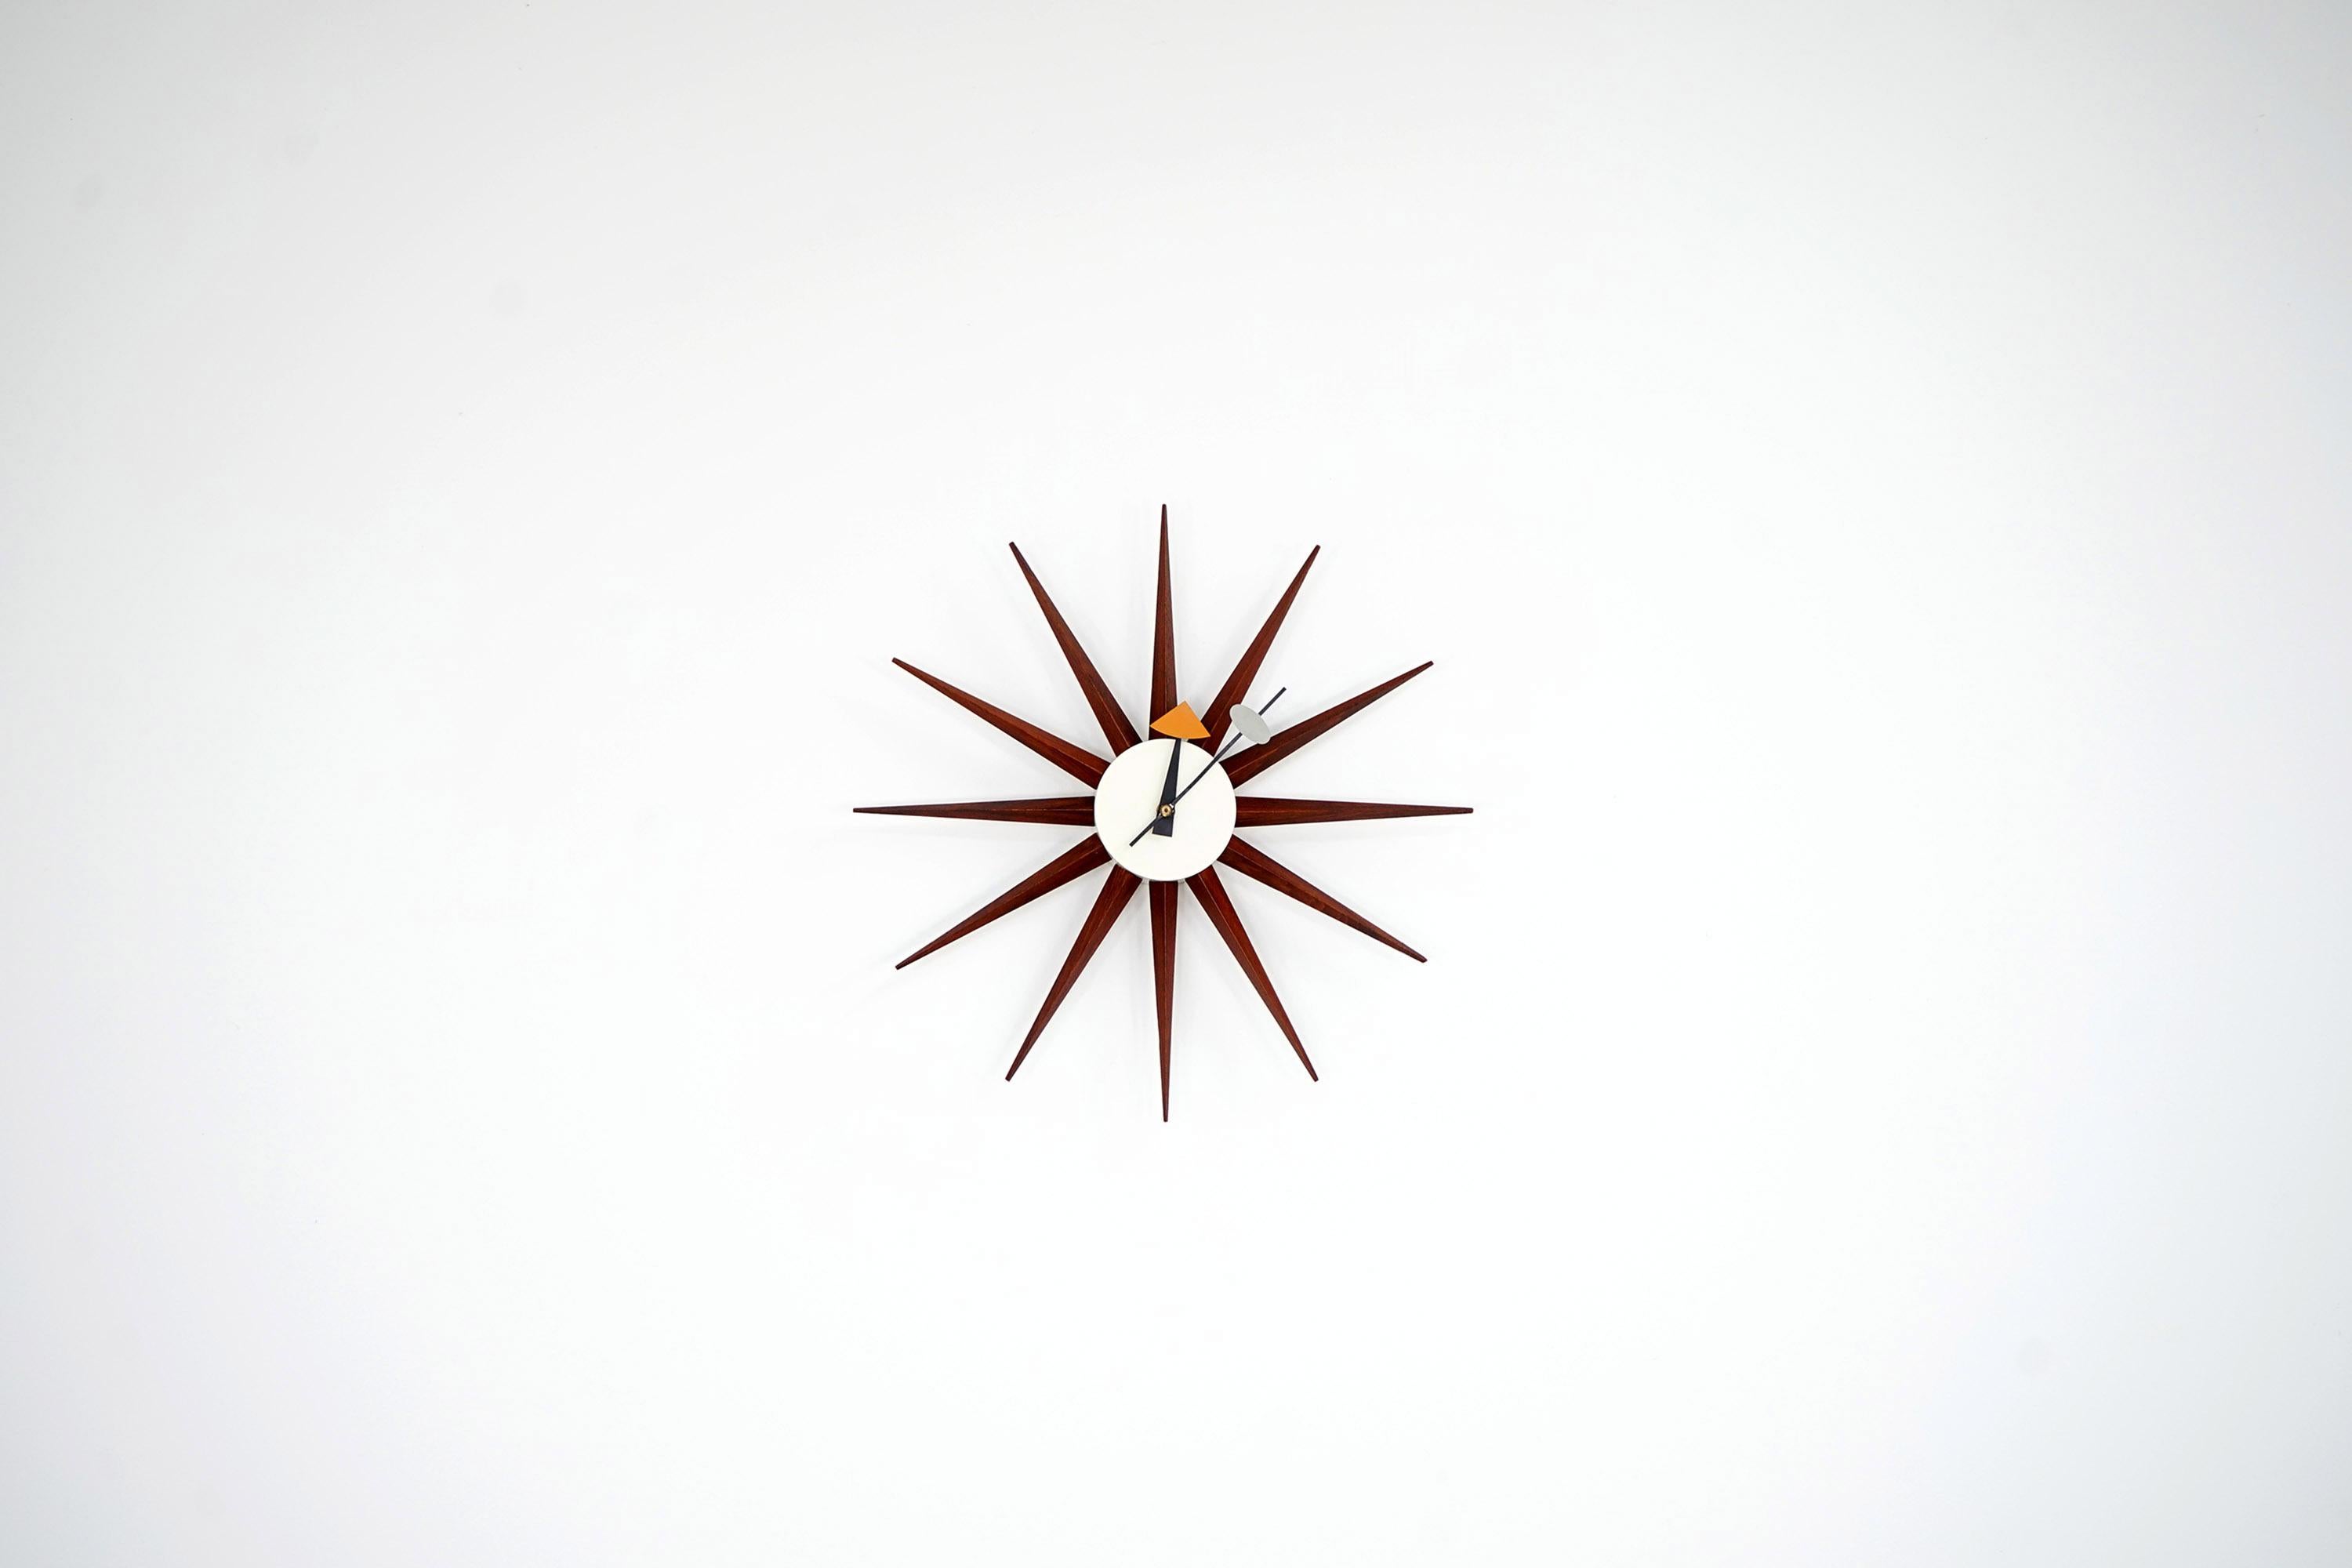 Diese schöne Howard Miller Uhr stammt aus den 1950er Jahren. Das Design stammt von George Nelson. Das Stück wurde von den Gebrüdern Fehlbaum in der Schweiz hergestellt. Das Gehäuse der Uhr ist aus Metall gefertigt. Die Spitzen sind aus Teakholz